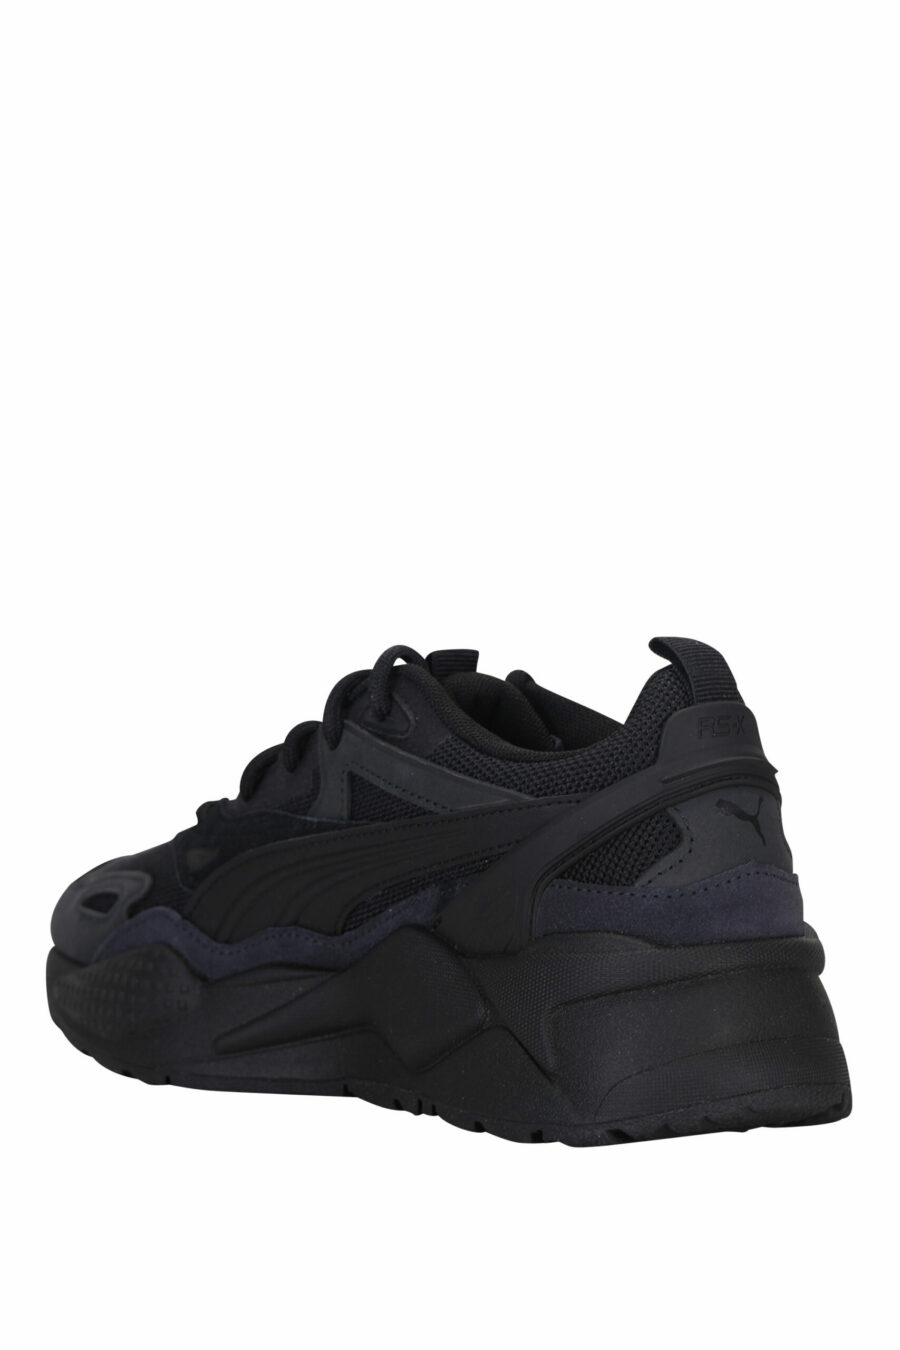 Sapatos pretos mistos "RS-X" com mini logótipo - 4065452600723 3 scaled